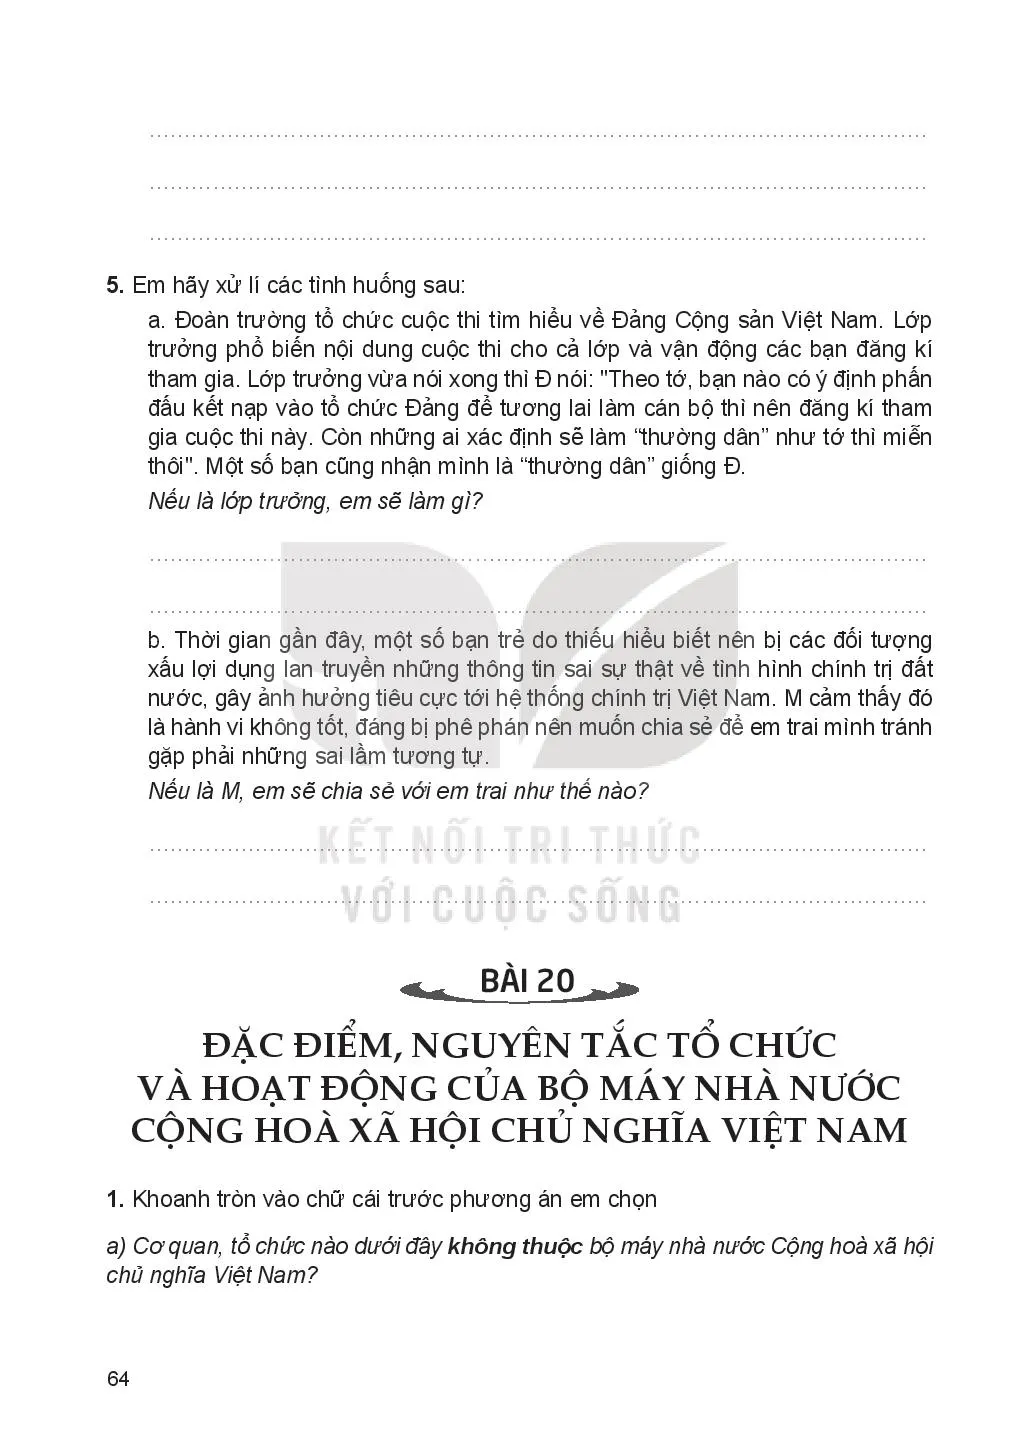 Bài 19: Đặc điểm, cấu trúc và nguyên tắc hoạt động của hệ thống chính trị Việt Nam